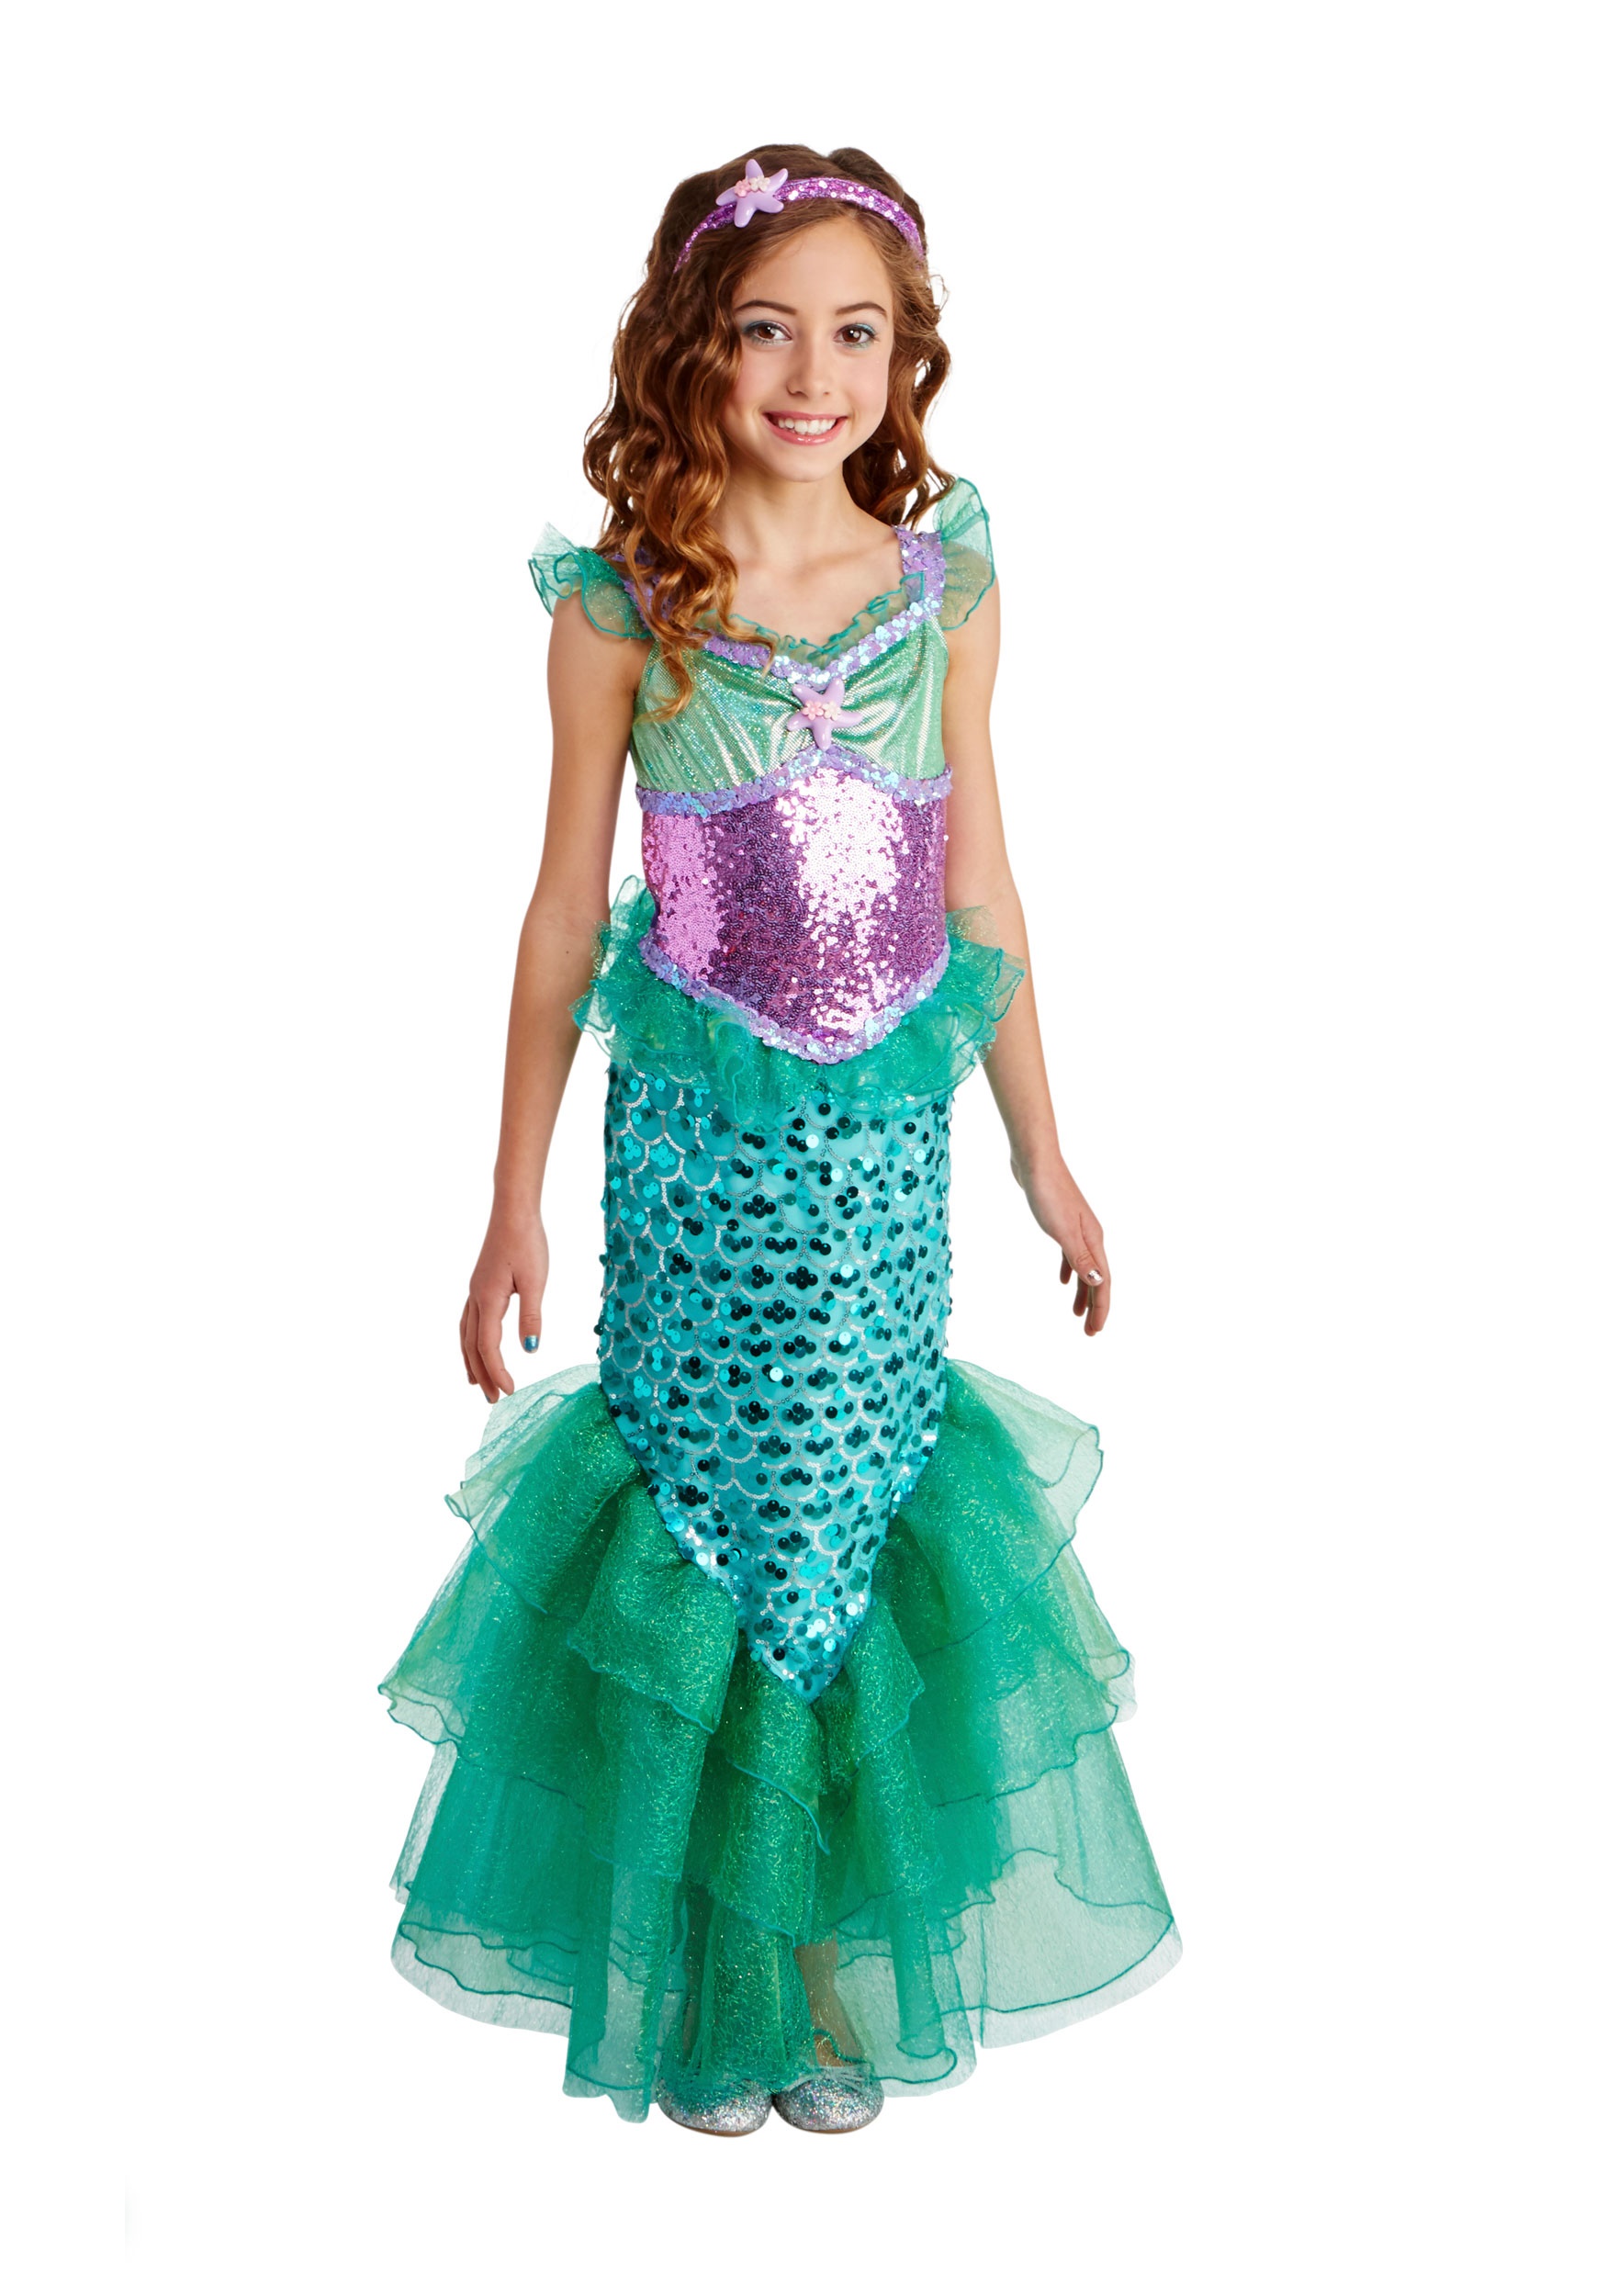 Blue Seas Mermaid Deluxe Costume for Kids